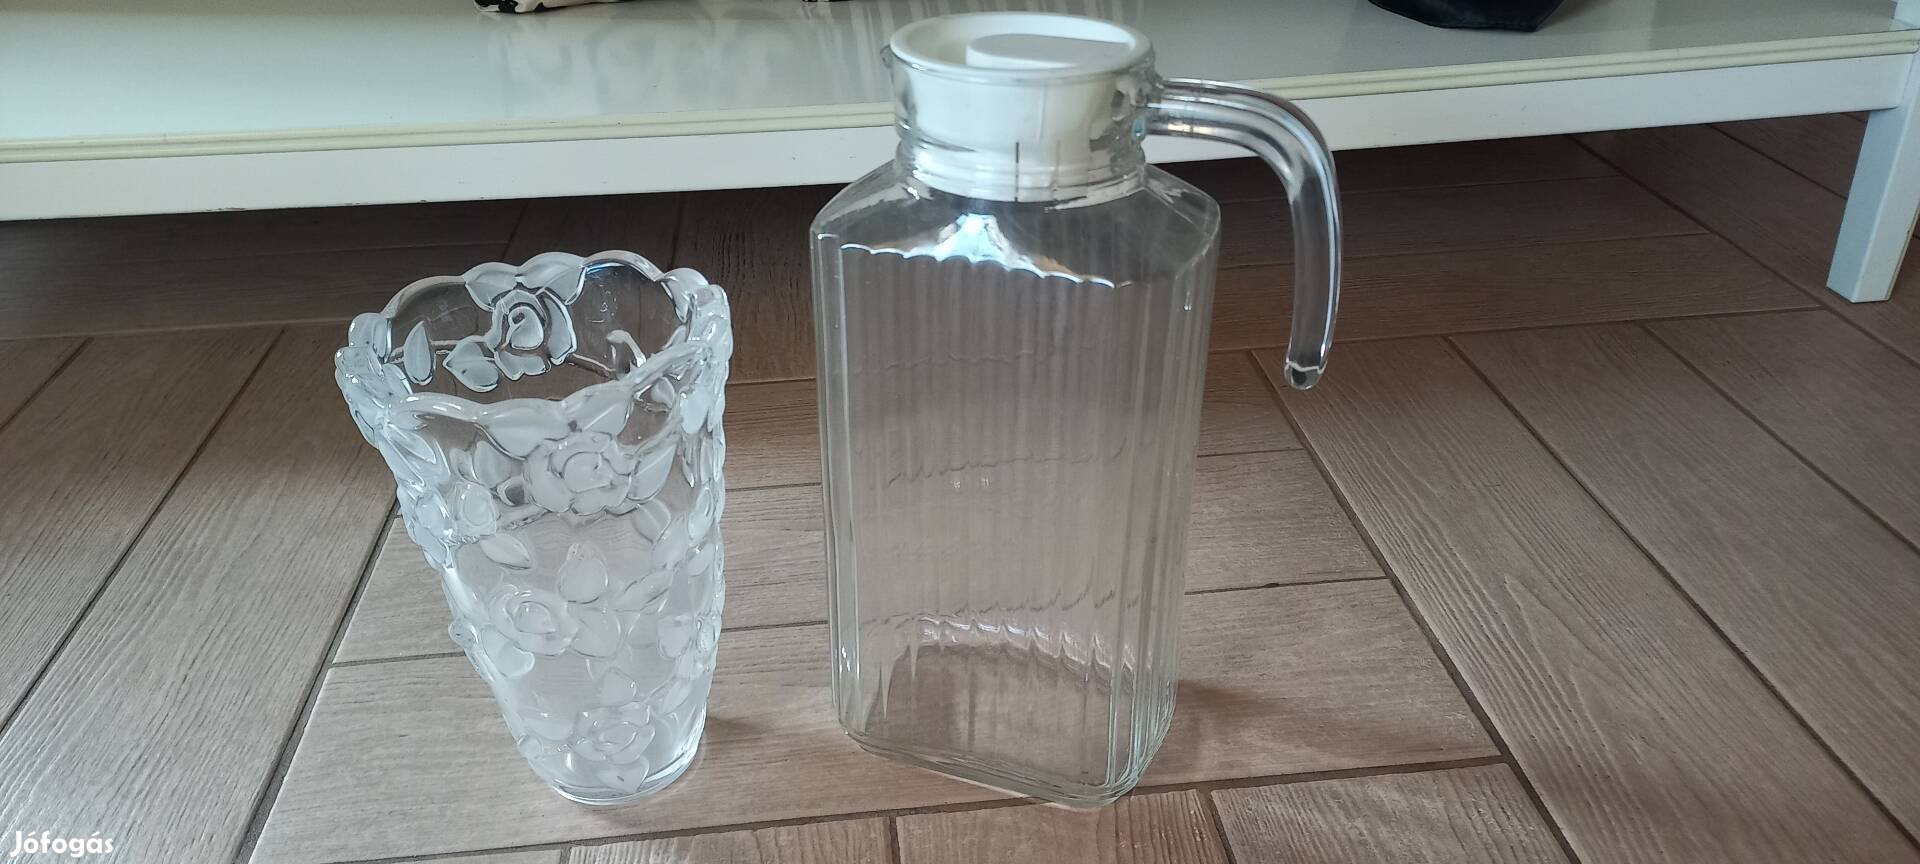 Üveg kancsó és üveg váza